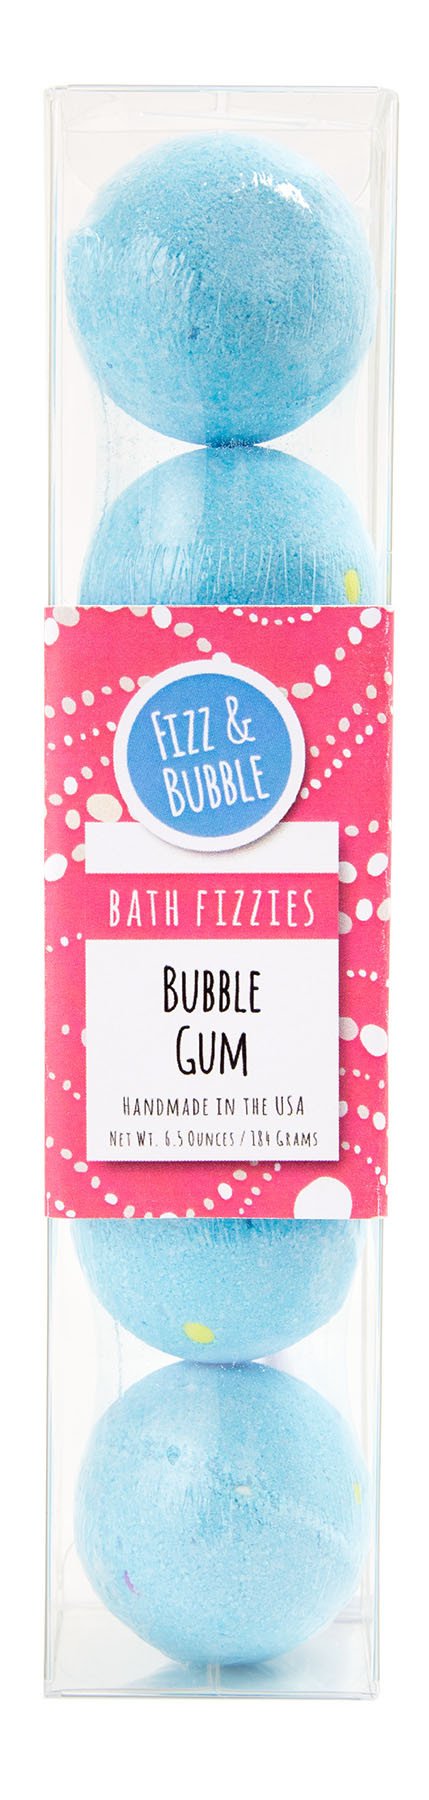 Bath Fizzy Petite Bath Bomb 5 Pack Bubble Gum